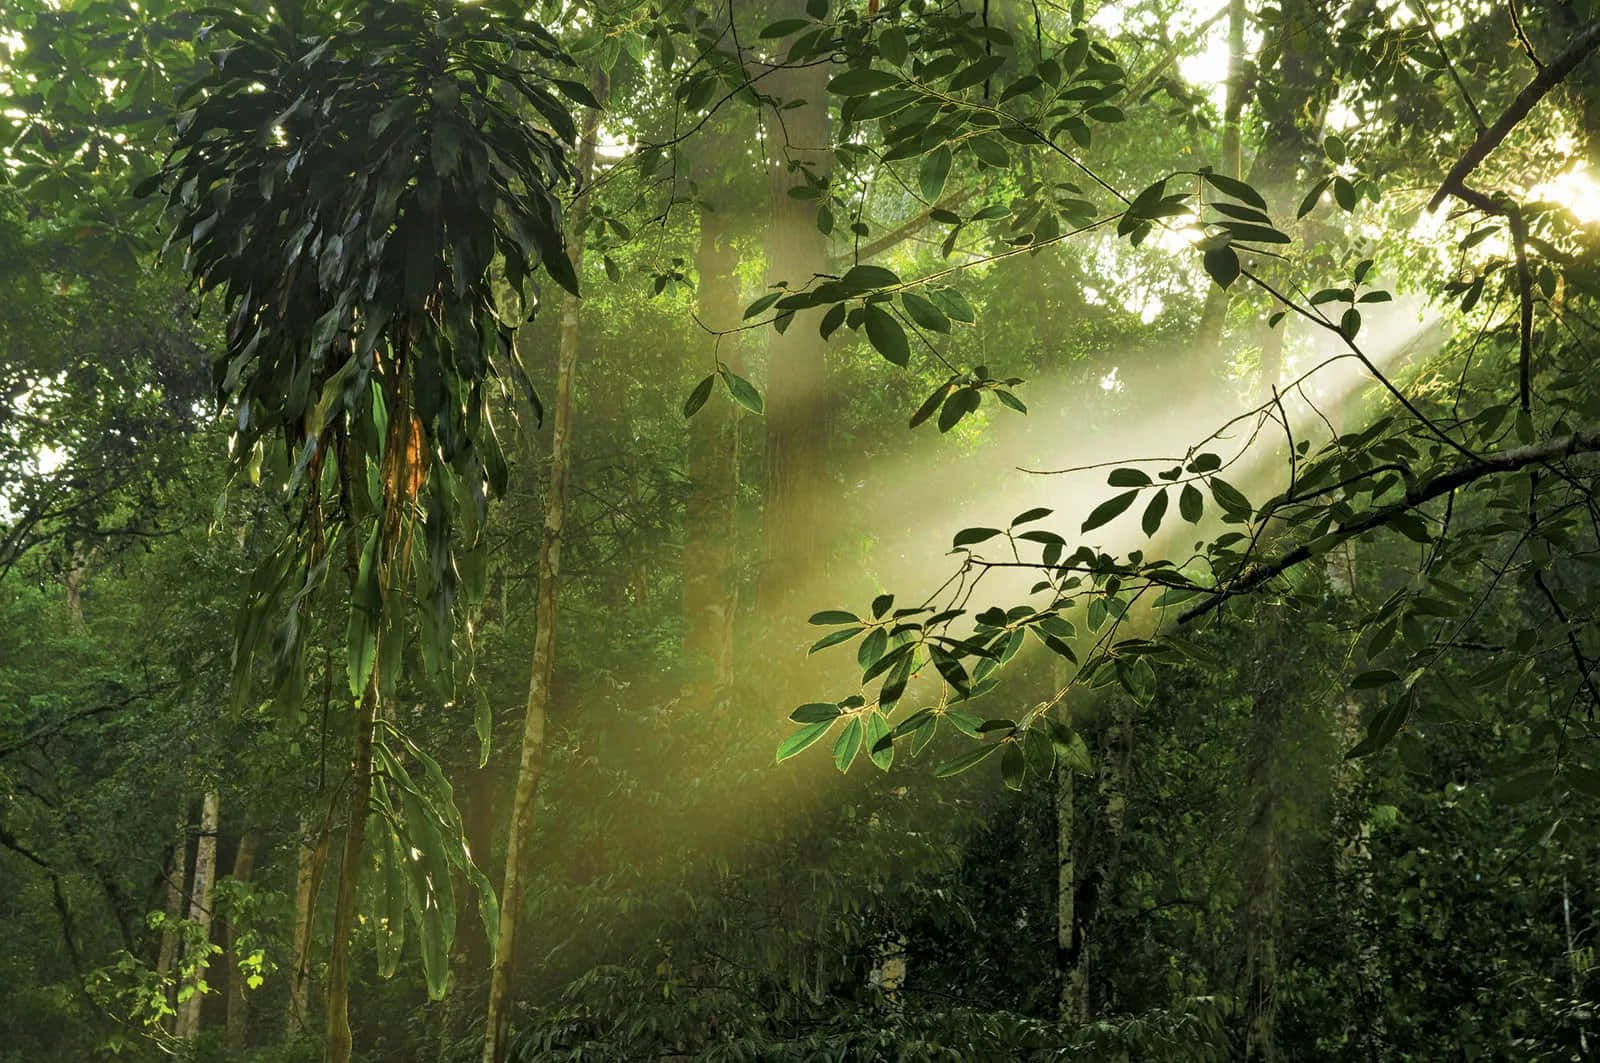 Laniebla Se Envuelve Alrededor De Los Troncos Frondosos De Los Árboles Verdes, Tan Lejos Como Alcanza La Vista En Este Hermoso Paisaje De La Selva Tropical.